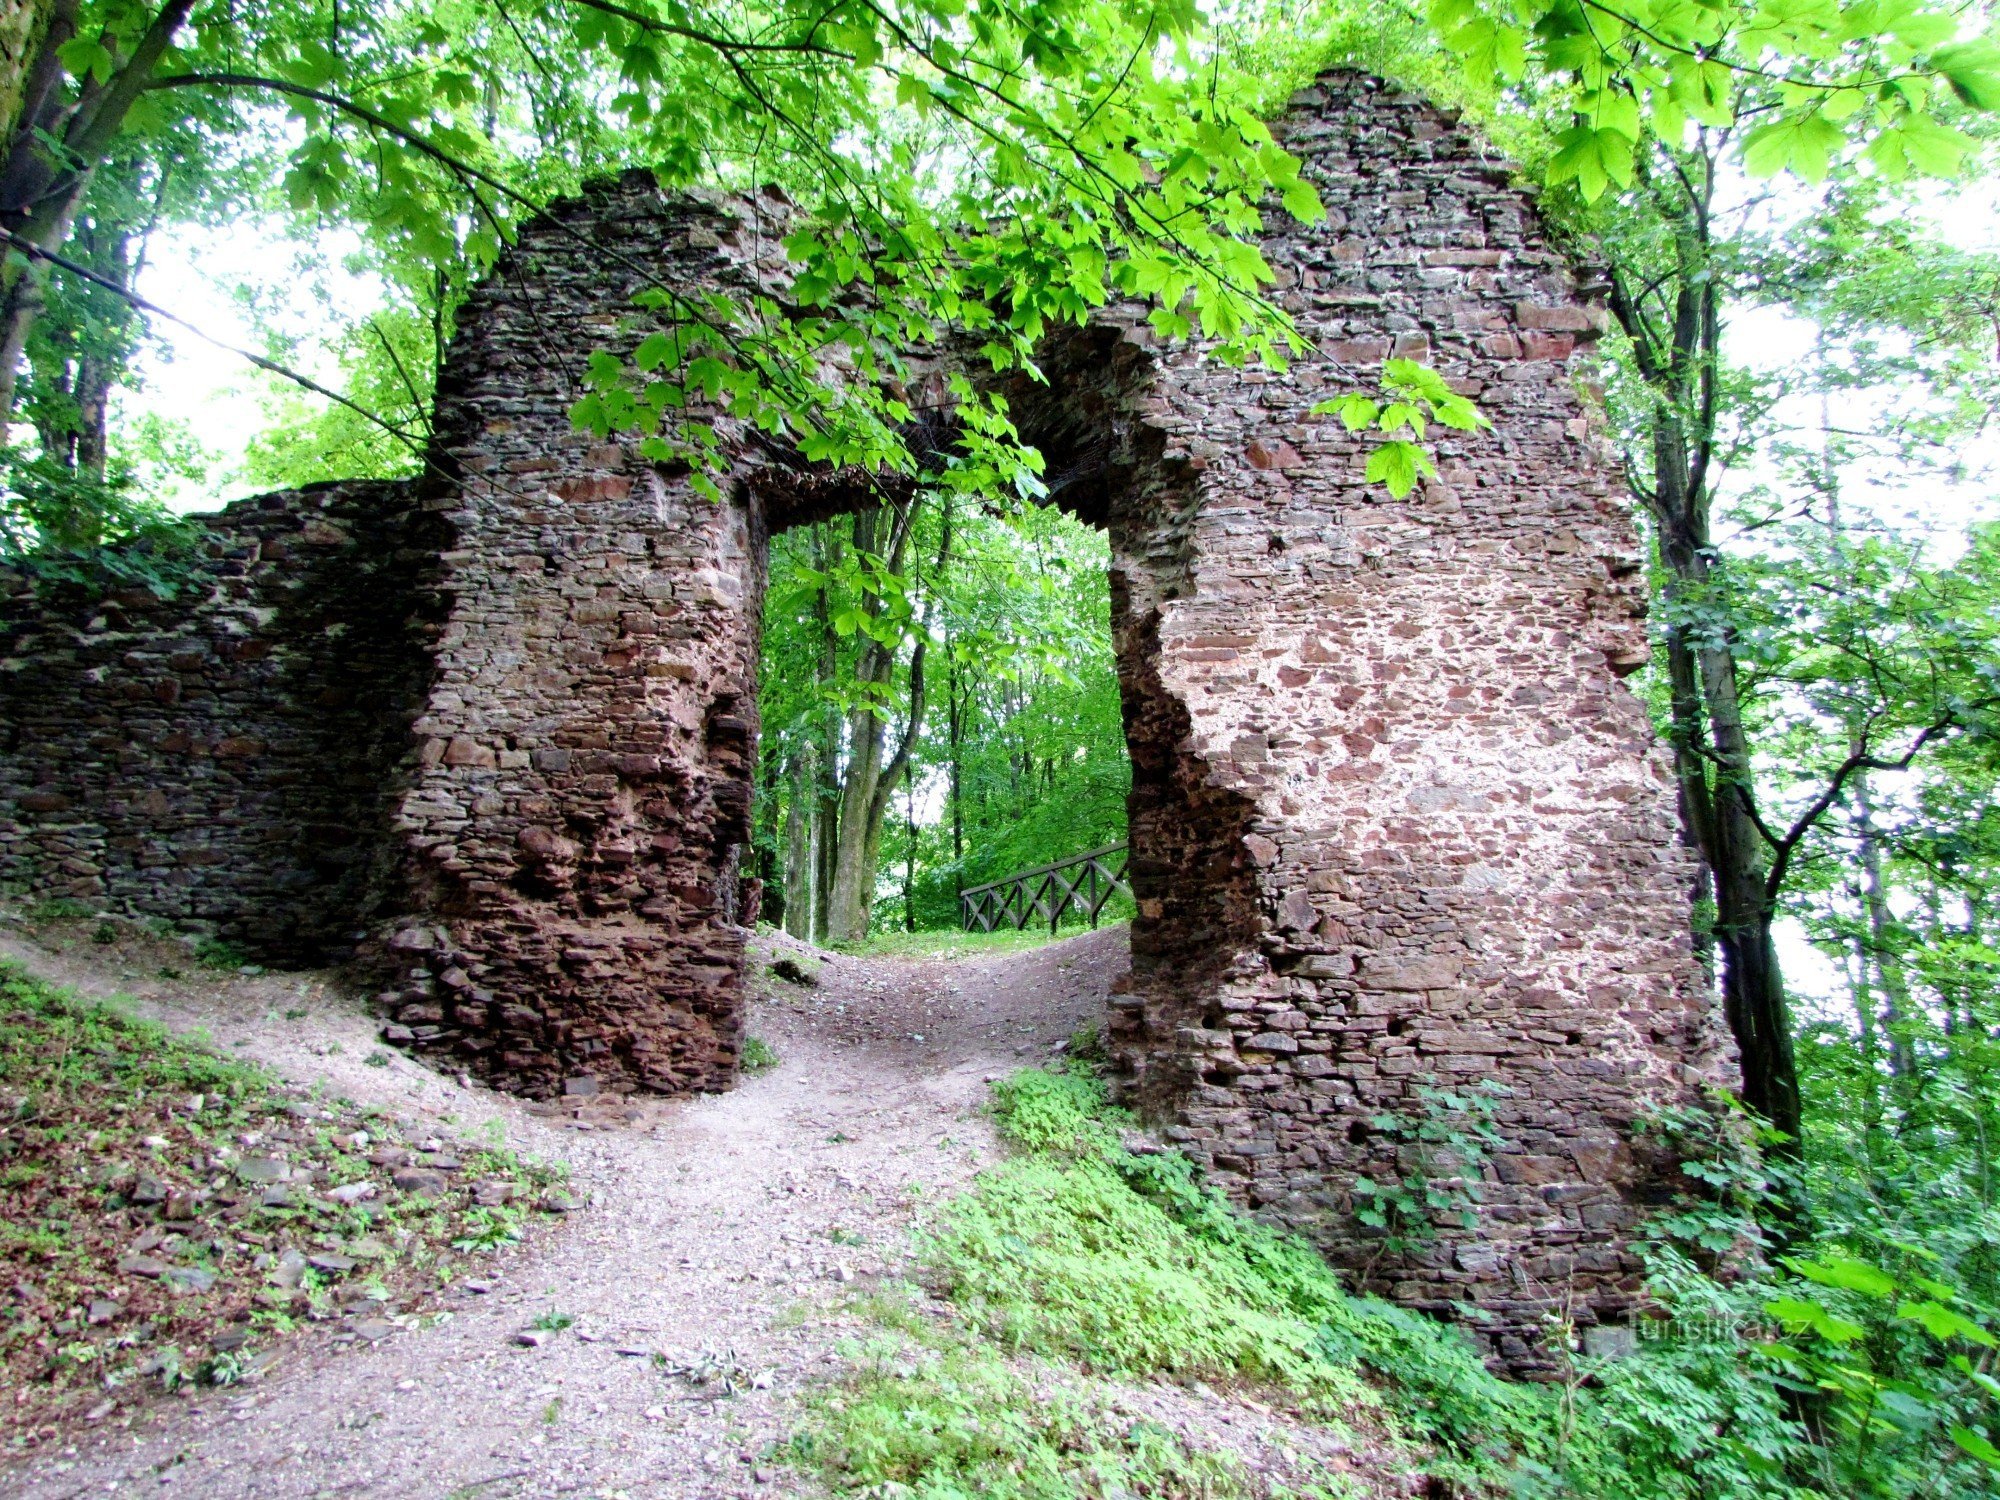 Iza ruševina Cimburka u gradu Trnávka